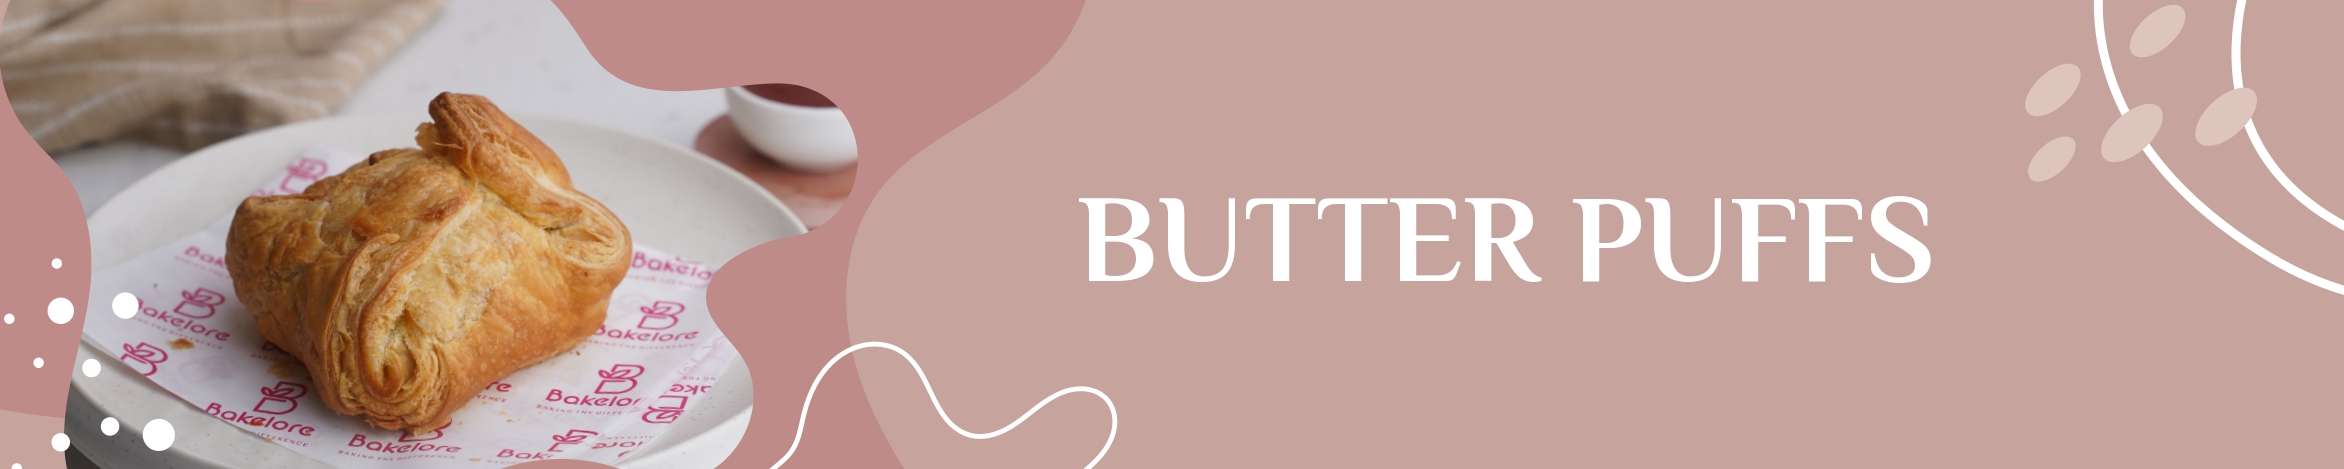 Butter pufs -bakelore